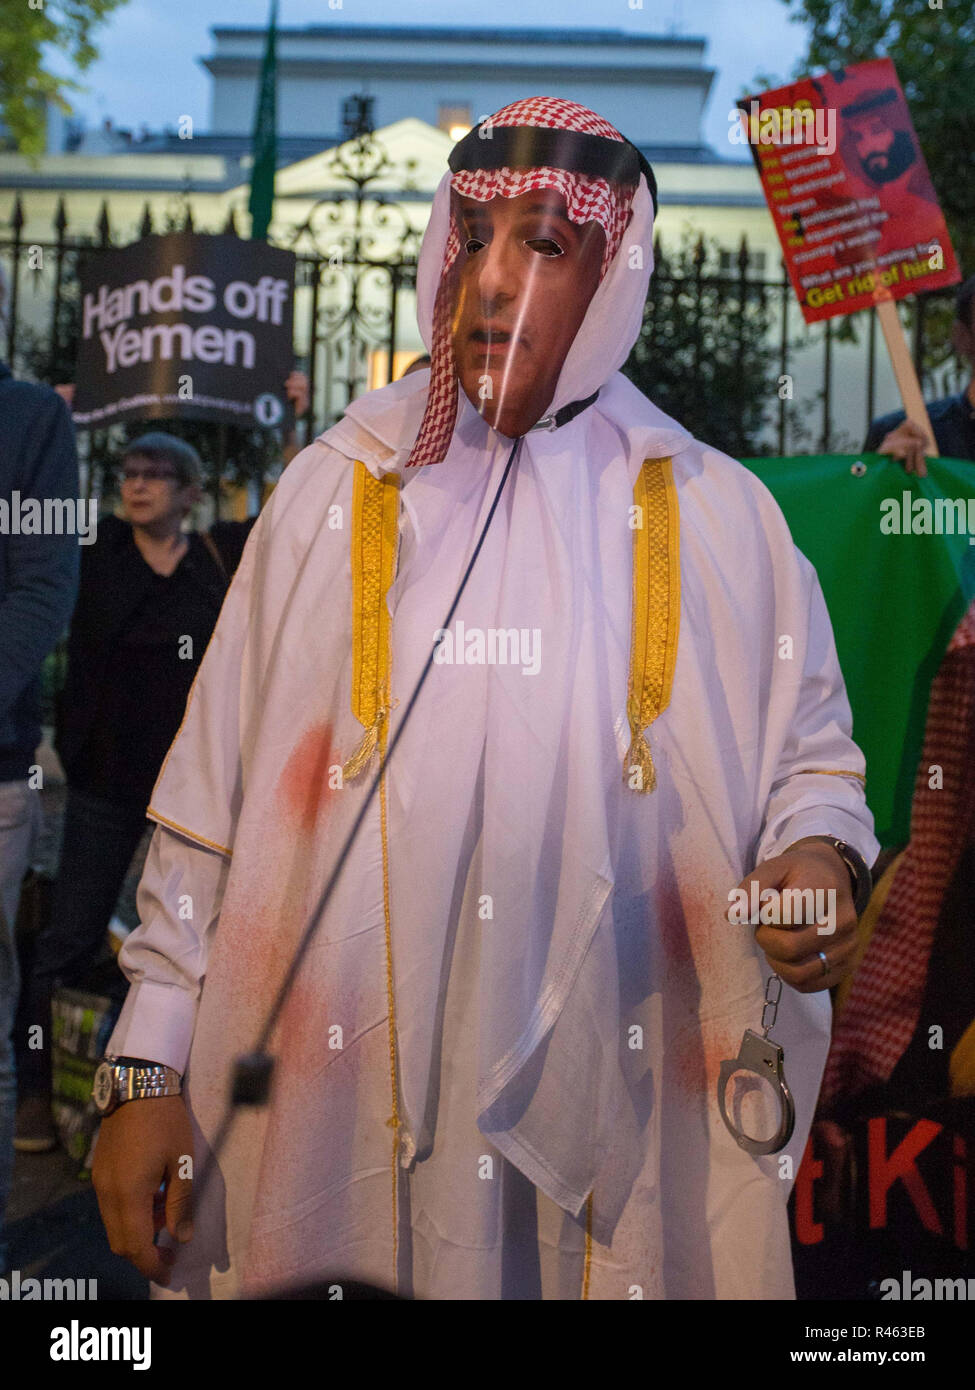 Demonstranten an der Saudi Arabien Botschaft in London Aufruf zur Gerechtigkeit für ermordete Journalist Jamal Khashoggi und bis zum Ende britische Waffenverkäufe an Saudi-Arabien Mit: Atmosphäre, Wo: London, Vereinigtes Königreich, wenn: 25 Okt 2018 Credit: Wheatley/WANN Stockfoto